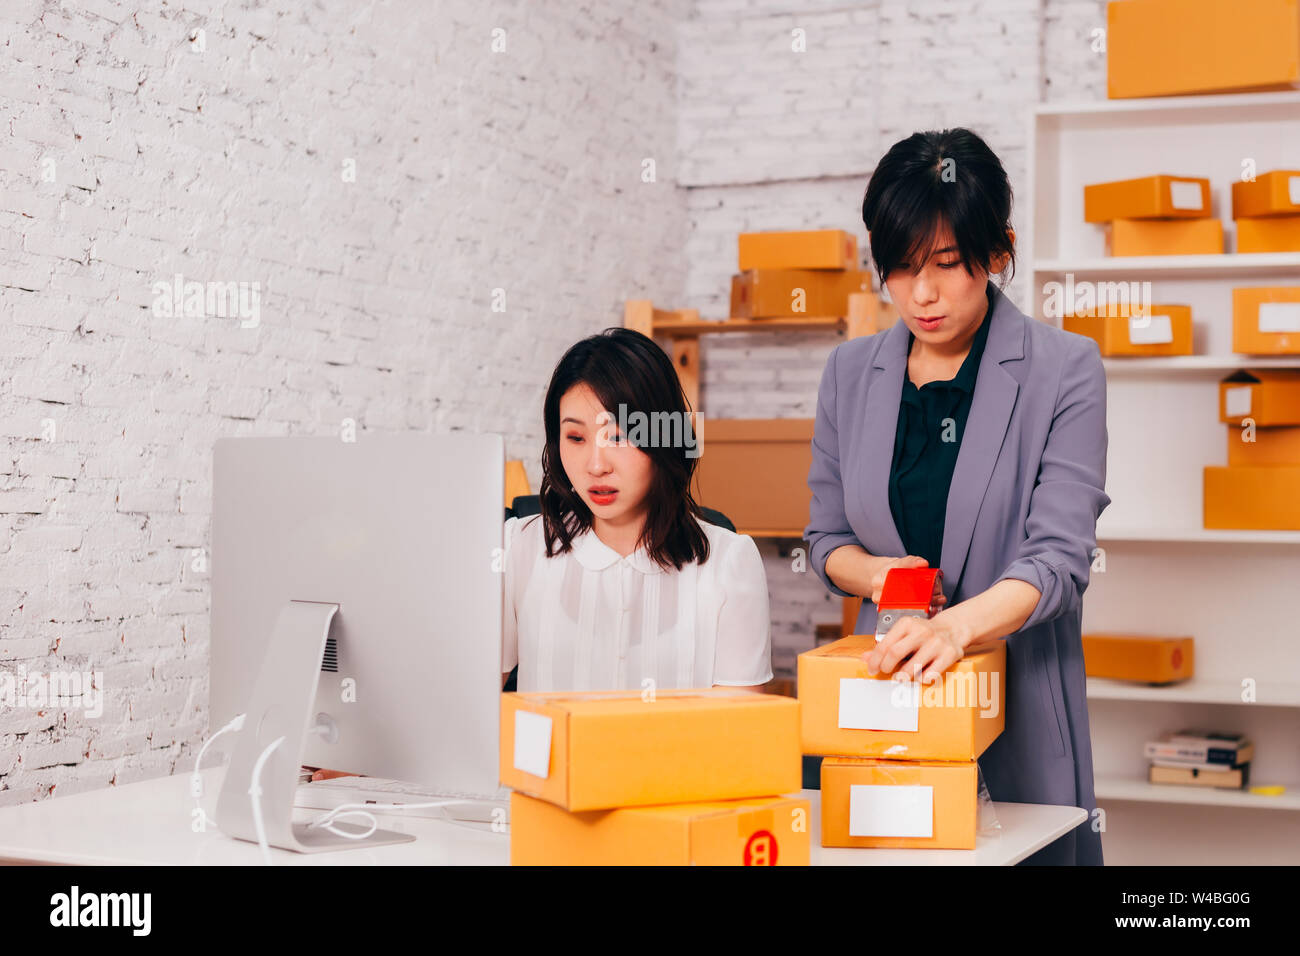 Zwei jungen asiatischen nach Fashion Business weiblichen Anbieter auf dem Handelsmarkt im Amt an den on-line-Unternehmen arbeiten mit Paketen von Kleidung geliefert werden Stockfoto